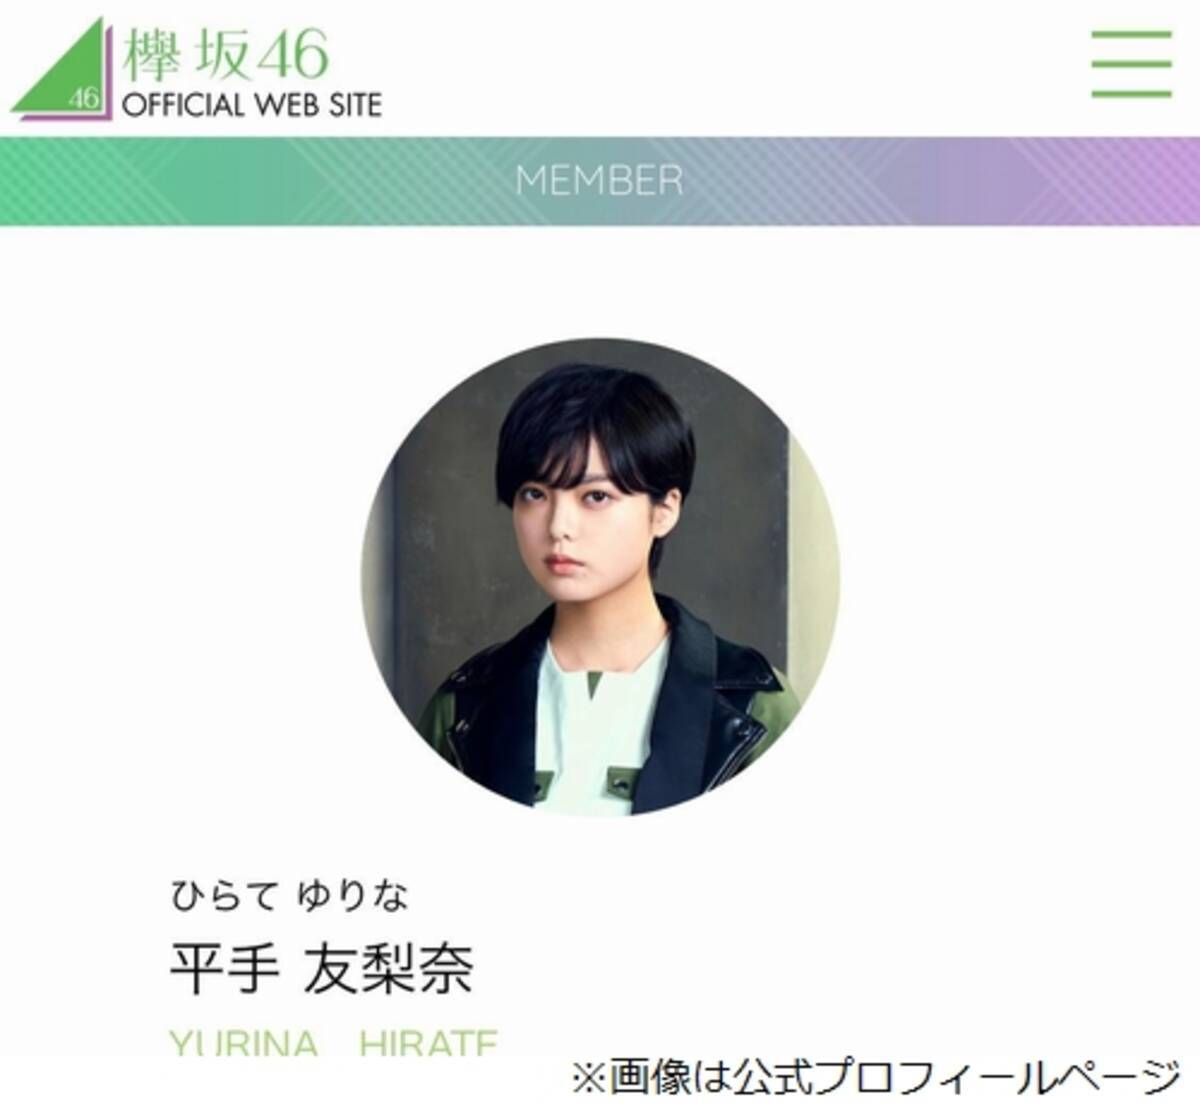 欅坂46エースの平手友梨奈脱退 衝撃走る 2020年1月23日 エキサイトニュース